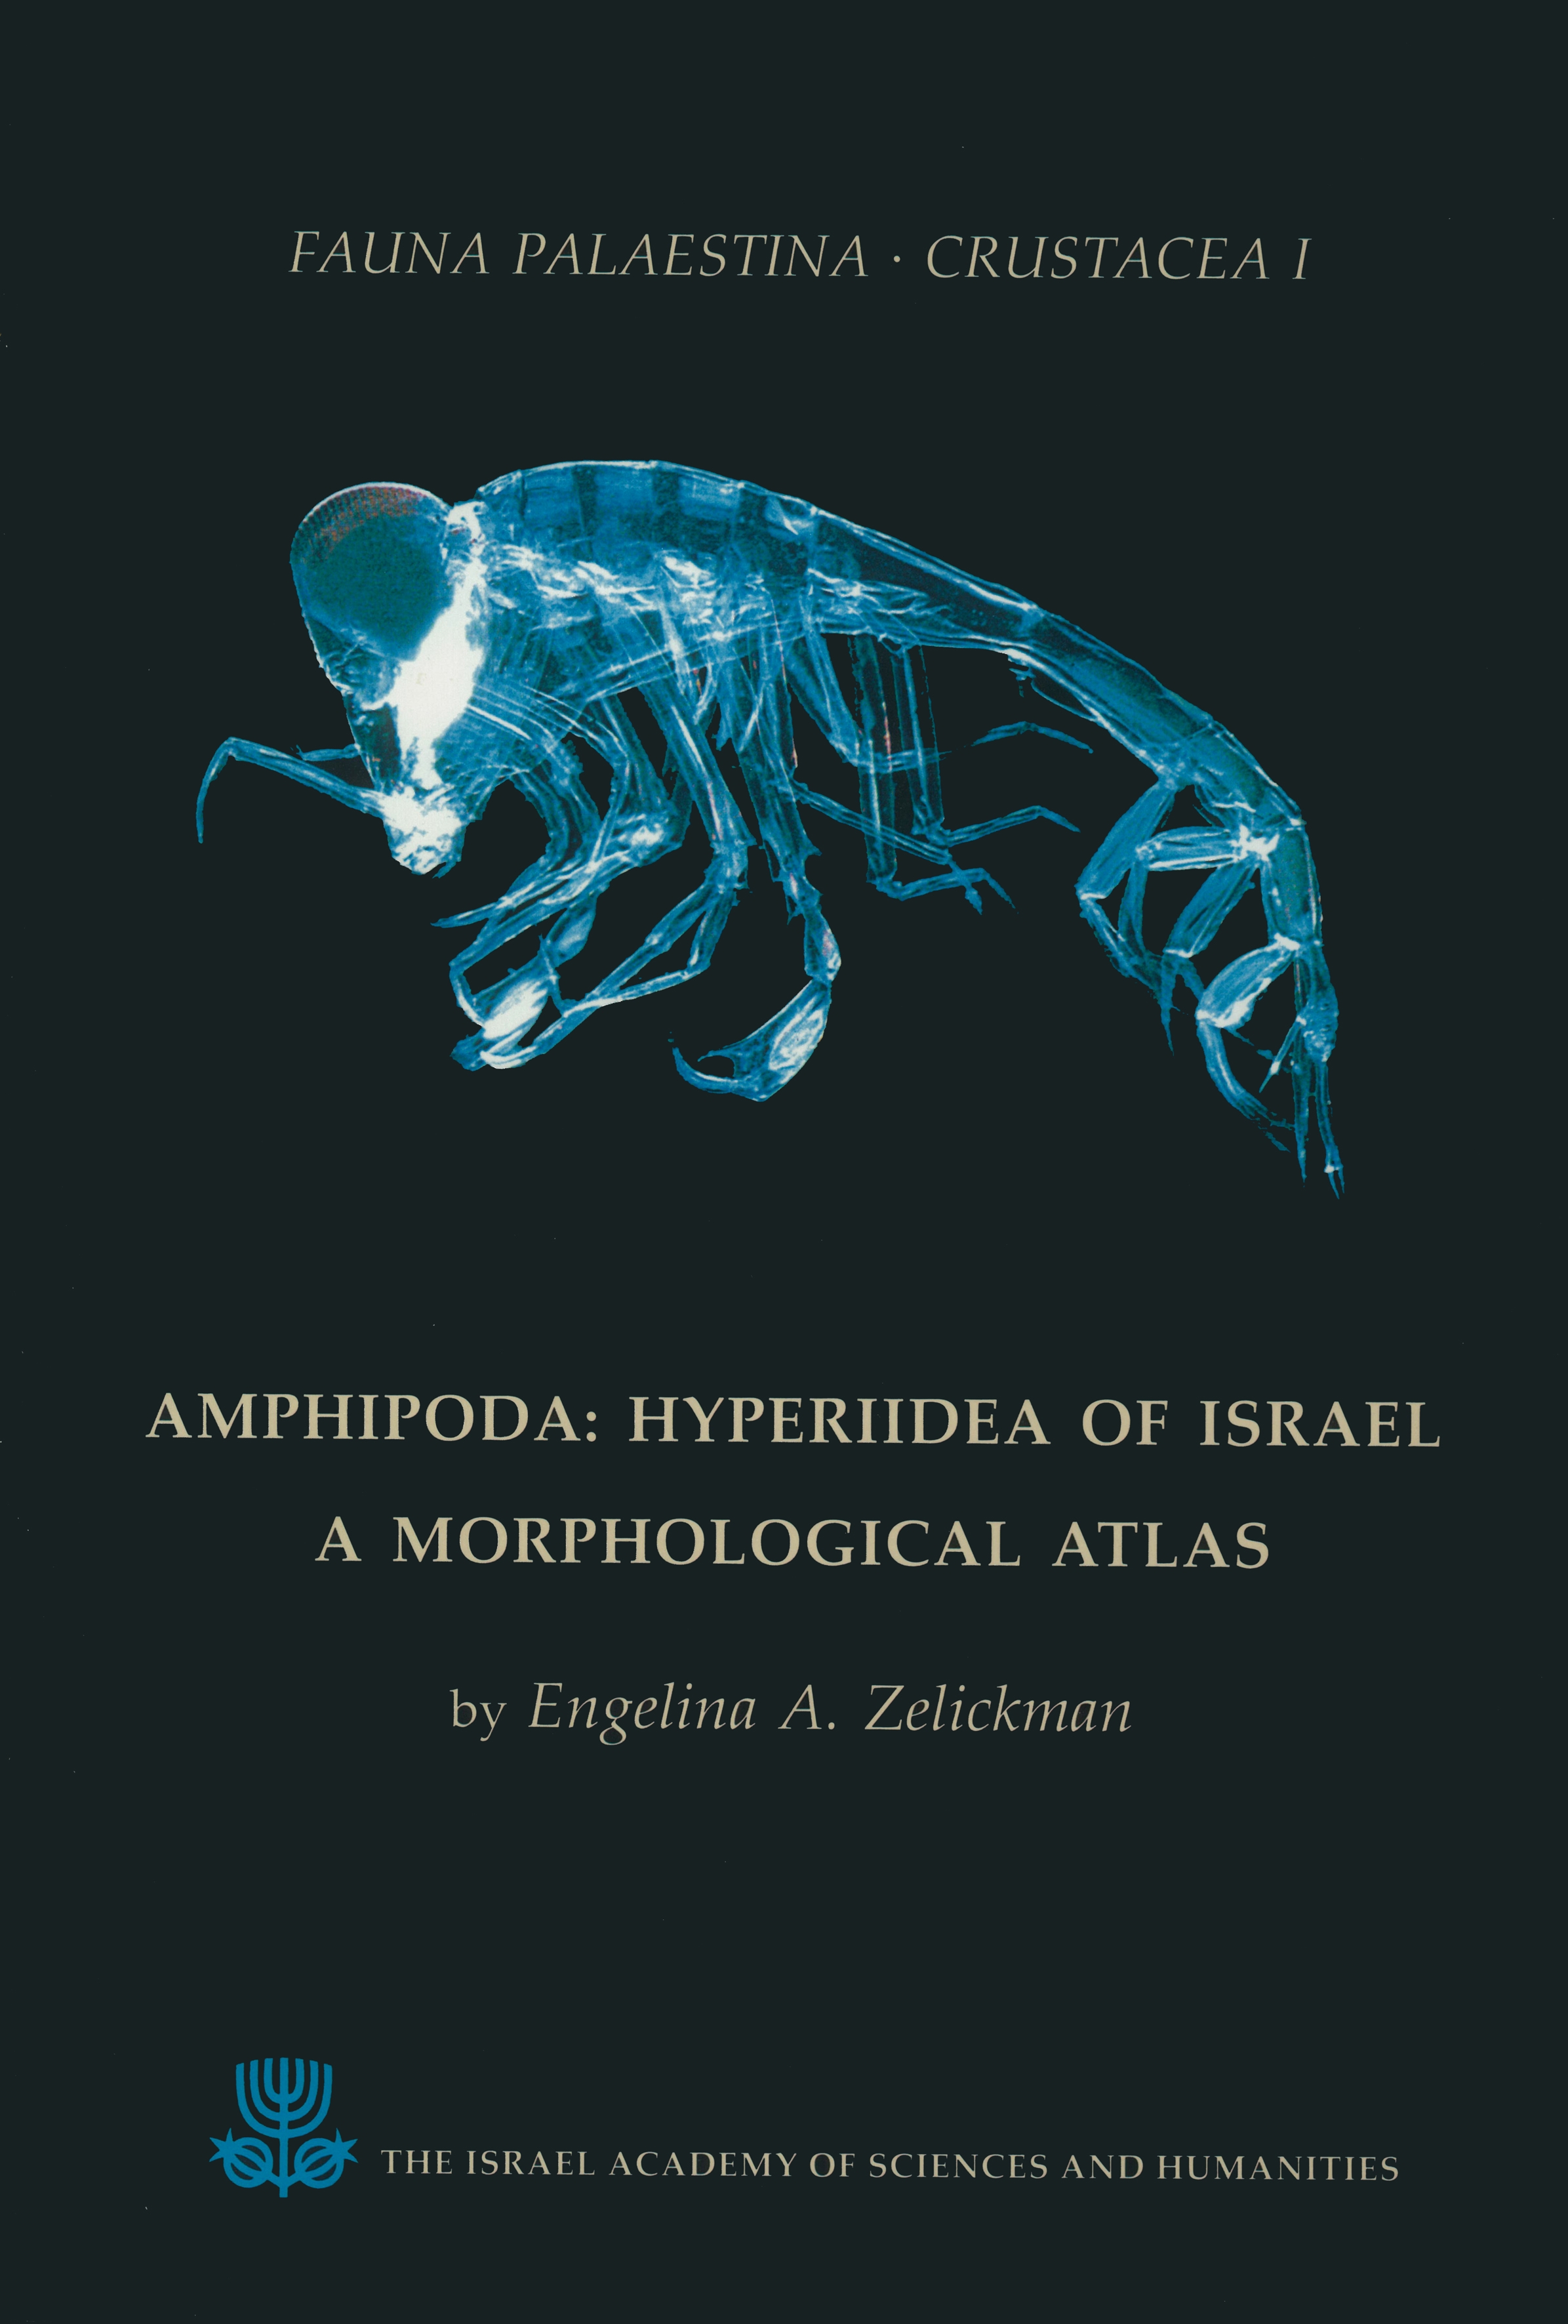 Crustacea I: Amphipoda: Hyperiidea of Israel – A Morphological Atlas